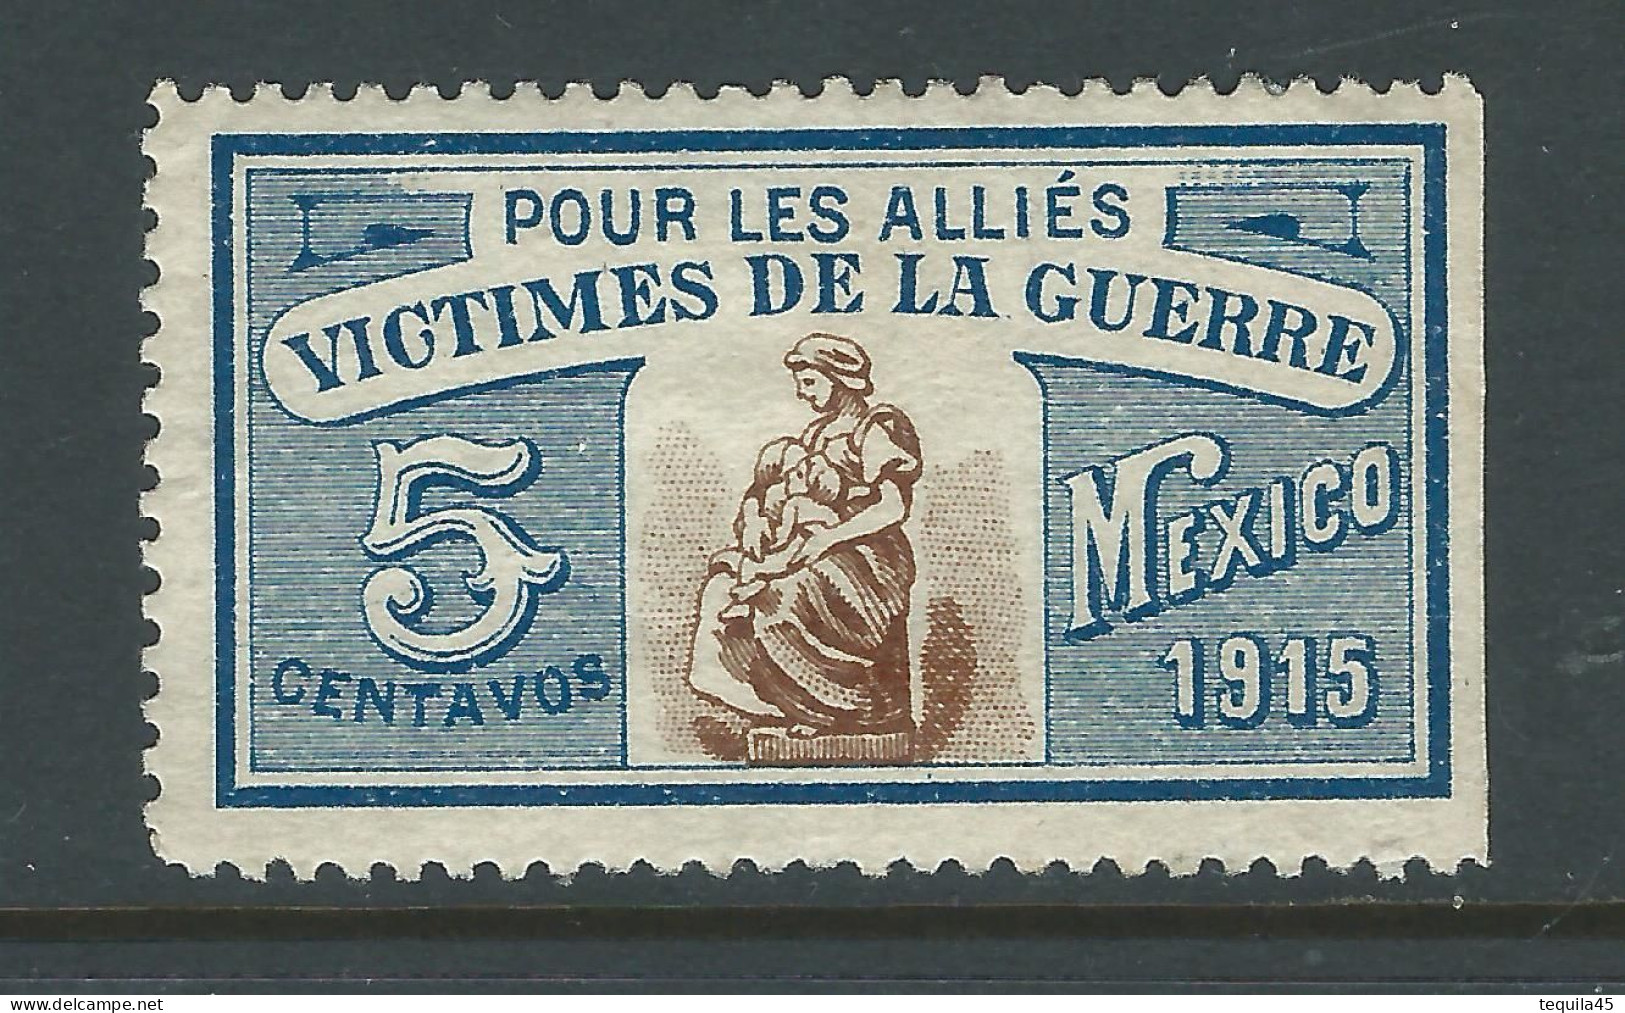 VIGNETTE CROIX-ROUGE Non DELANDRE FRANCE Comité De MEXICO 1915 WWI WW1 Cinderella Poster Stamp 1914 1918 War - Rode Kruis